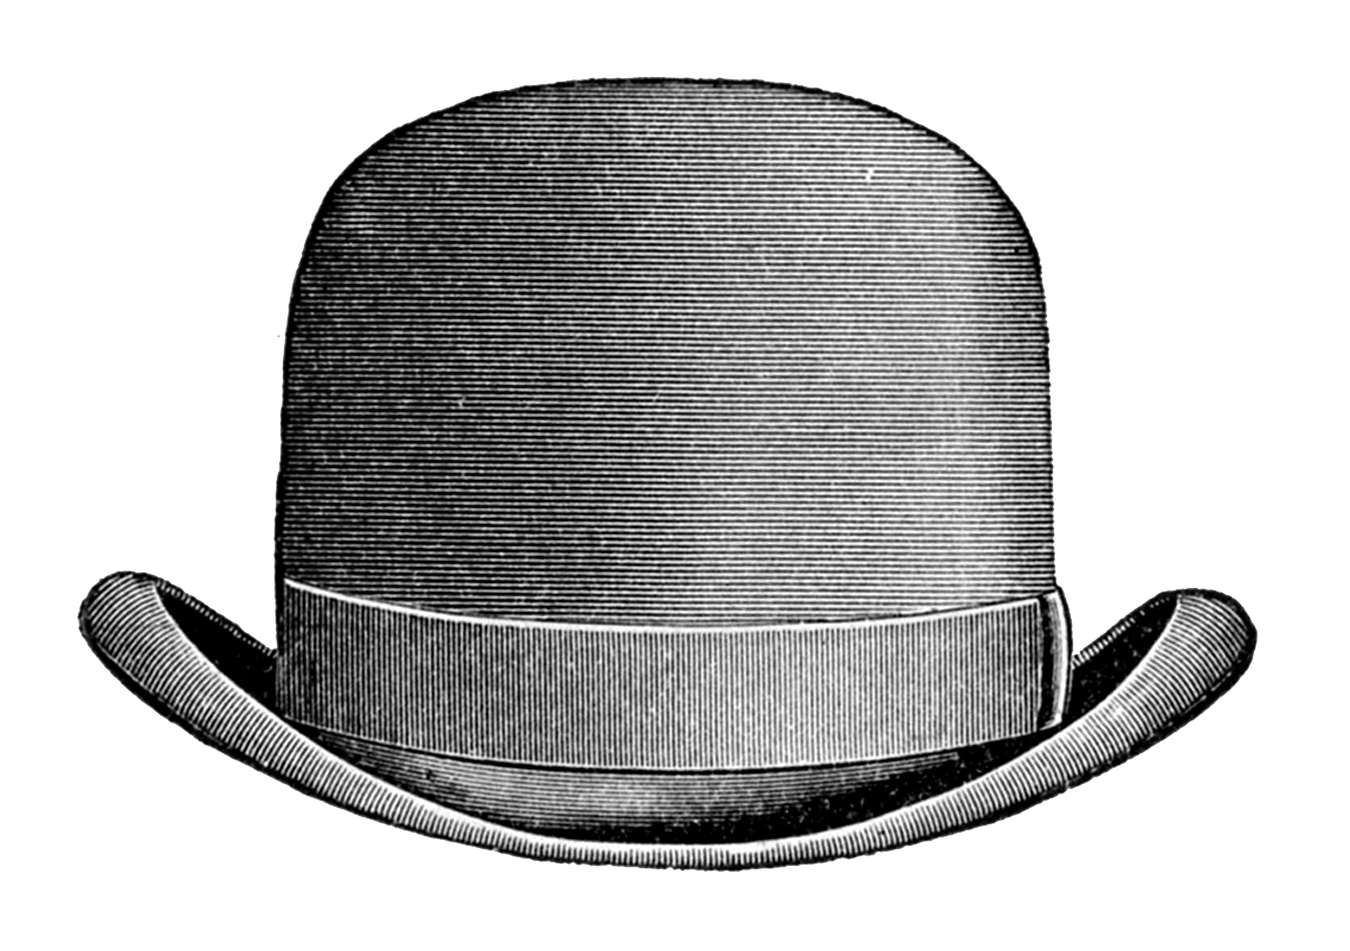 vintage hat clipart - photo #2